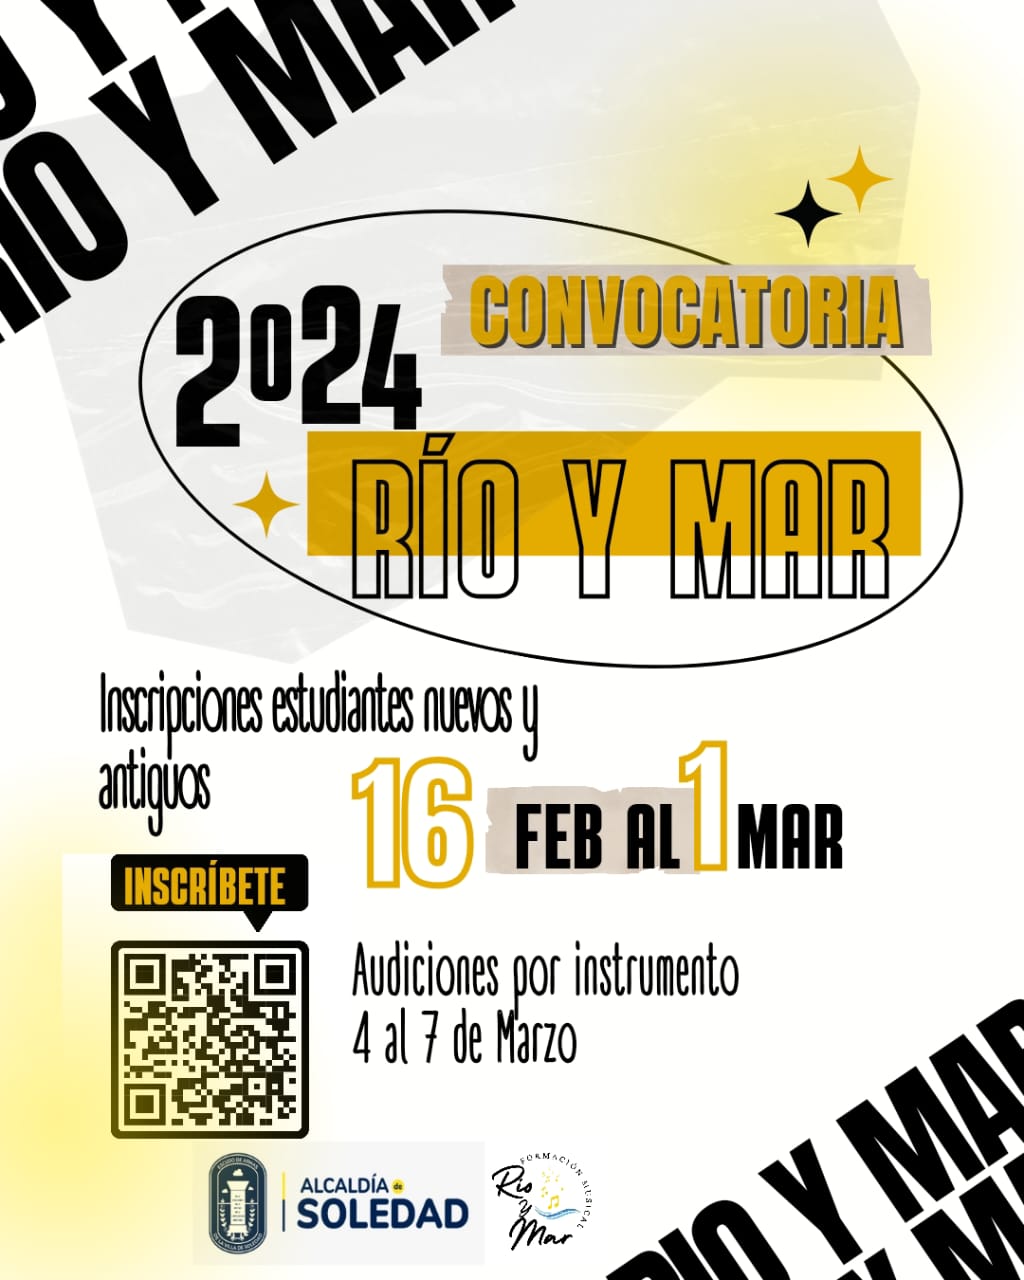 Abren convocatoria para programa musical ‘Río y mar’.